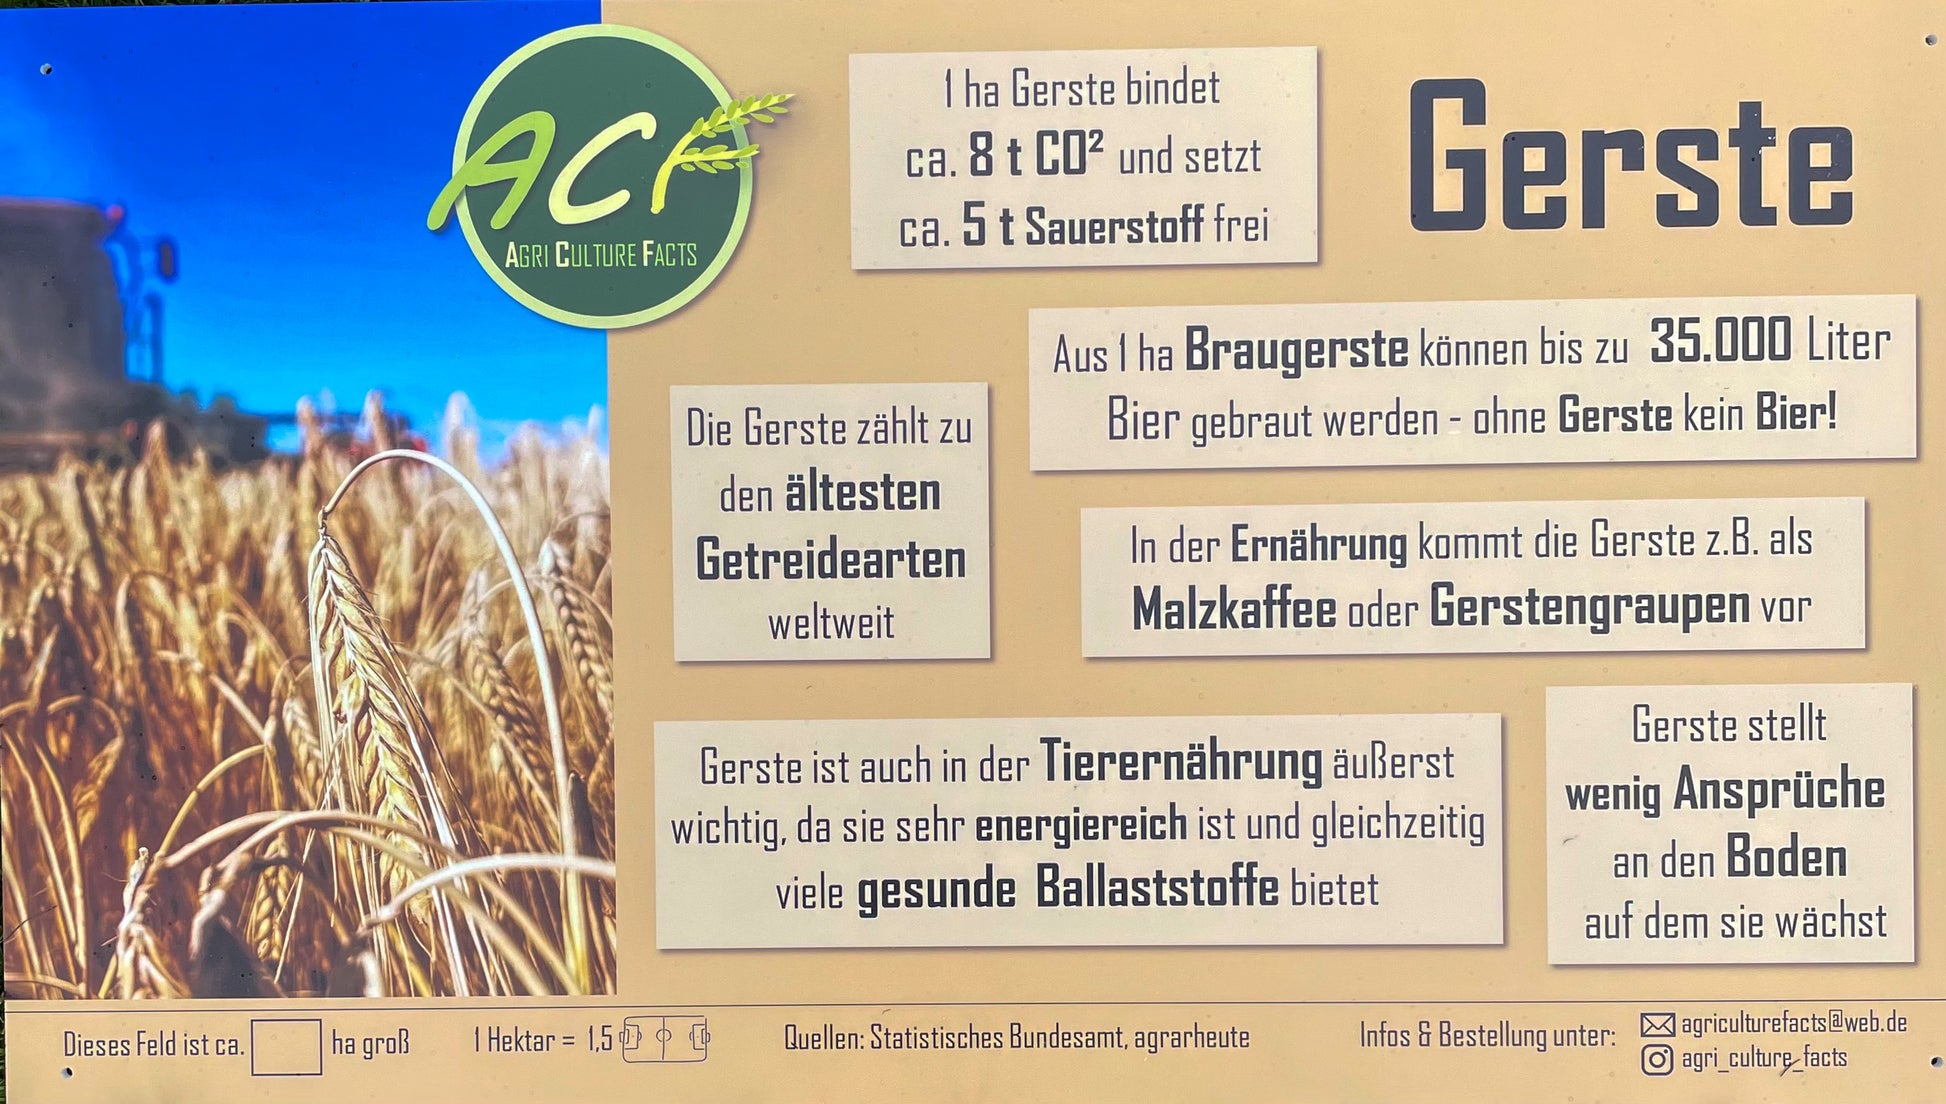 Magnetschild Schild Convoi Exceptionnel für Landwirtschaft uvm. in Bayern  - Neufahrn in Niederbayern, Nutzfahrzeugteile & Zubehör